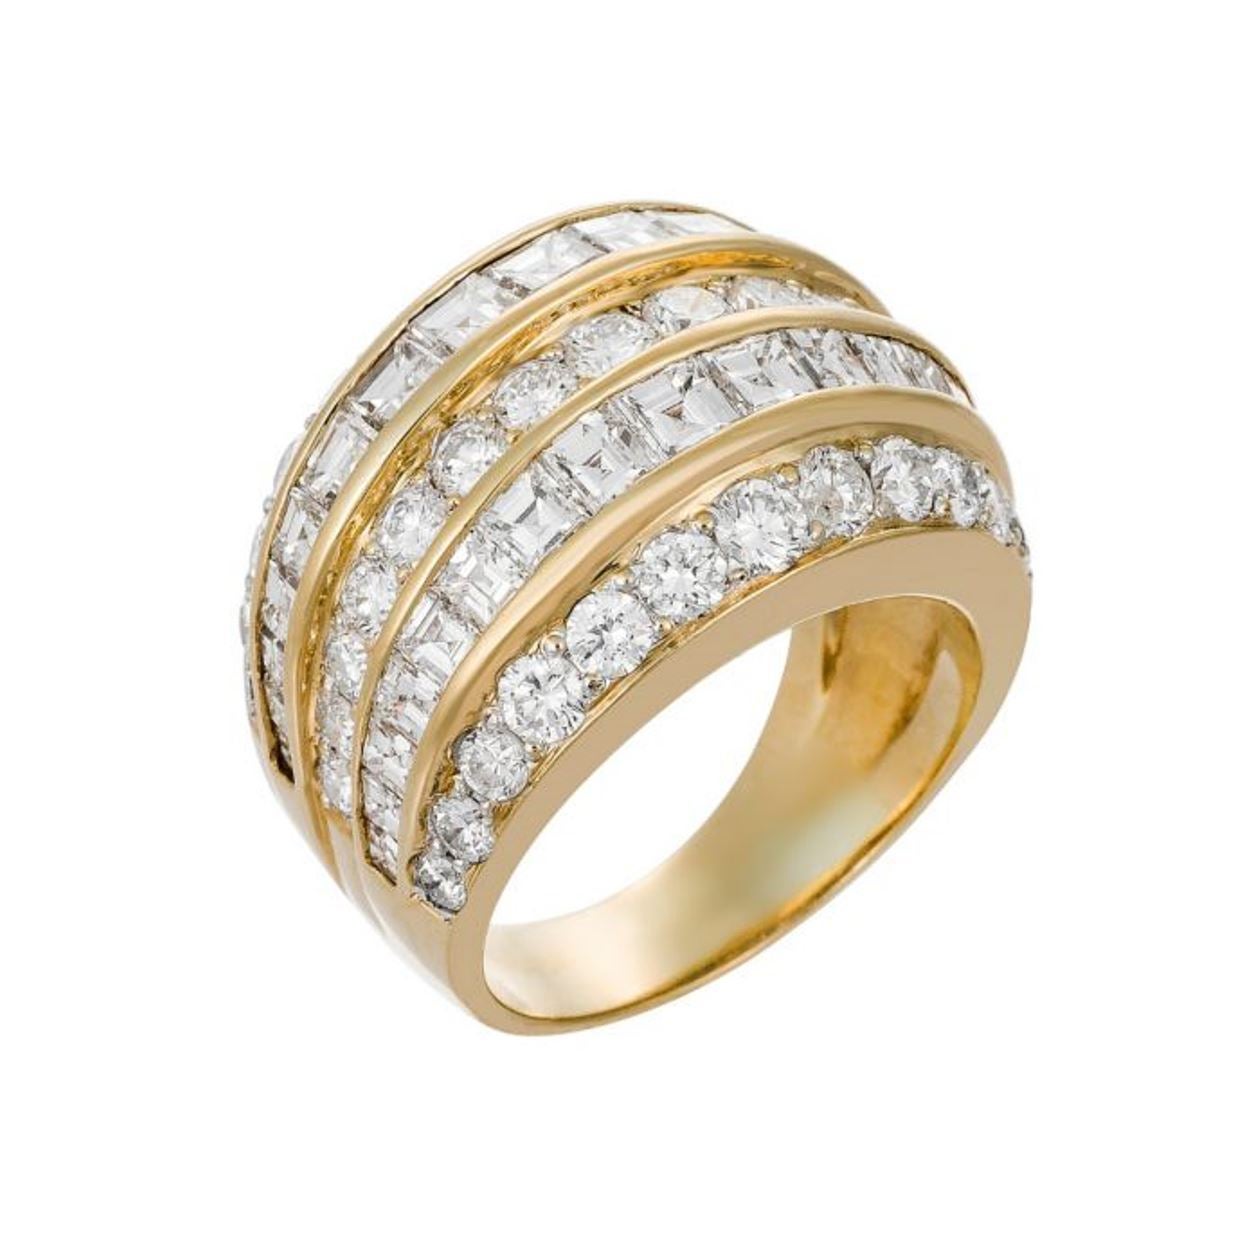 Bague classique en or jaune avec 5,50 carats de diamants de couleur et de qualité supérieures. Toutes les coupes idéales. 

Conçu par Diana M.